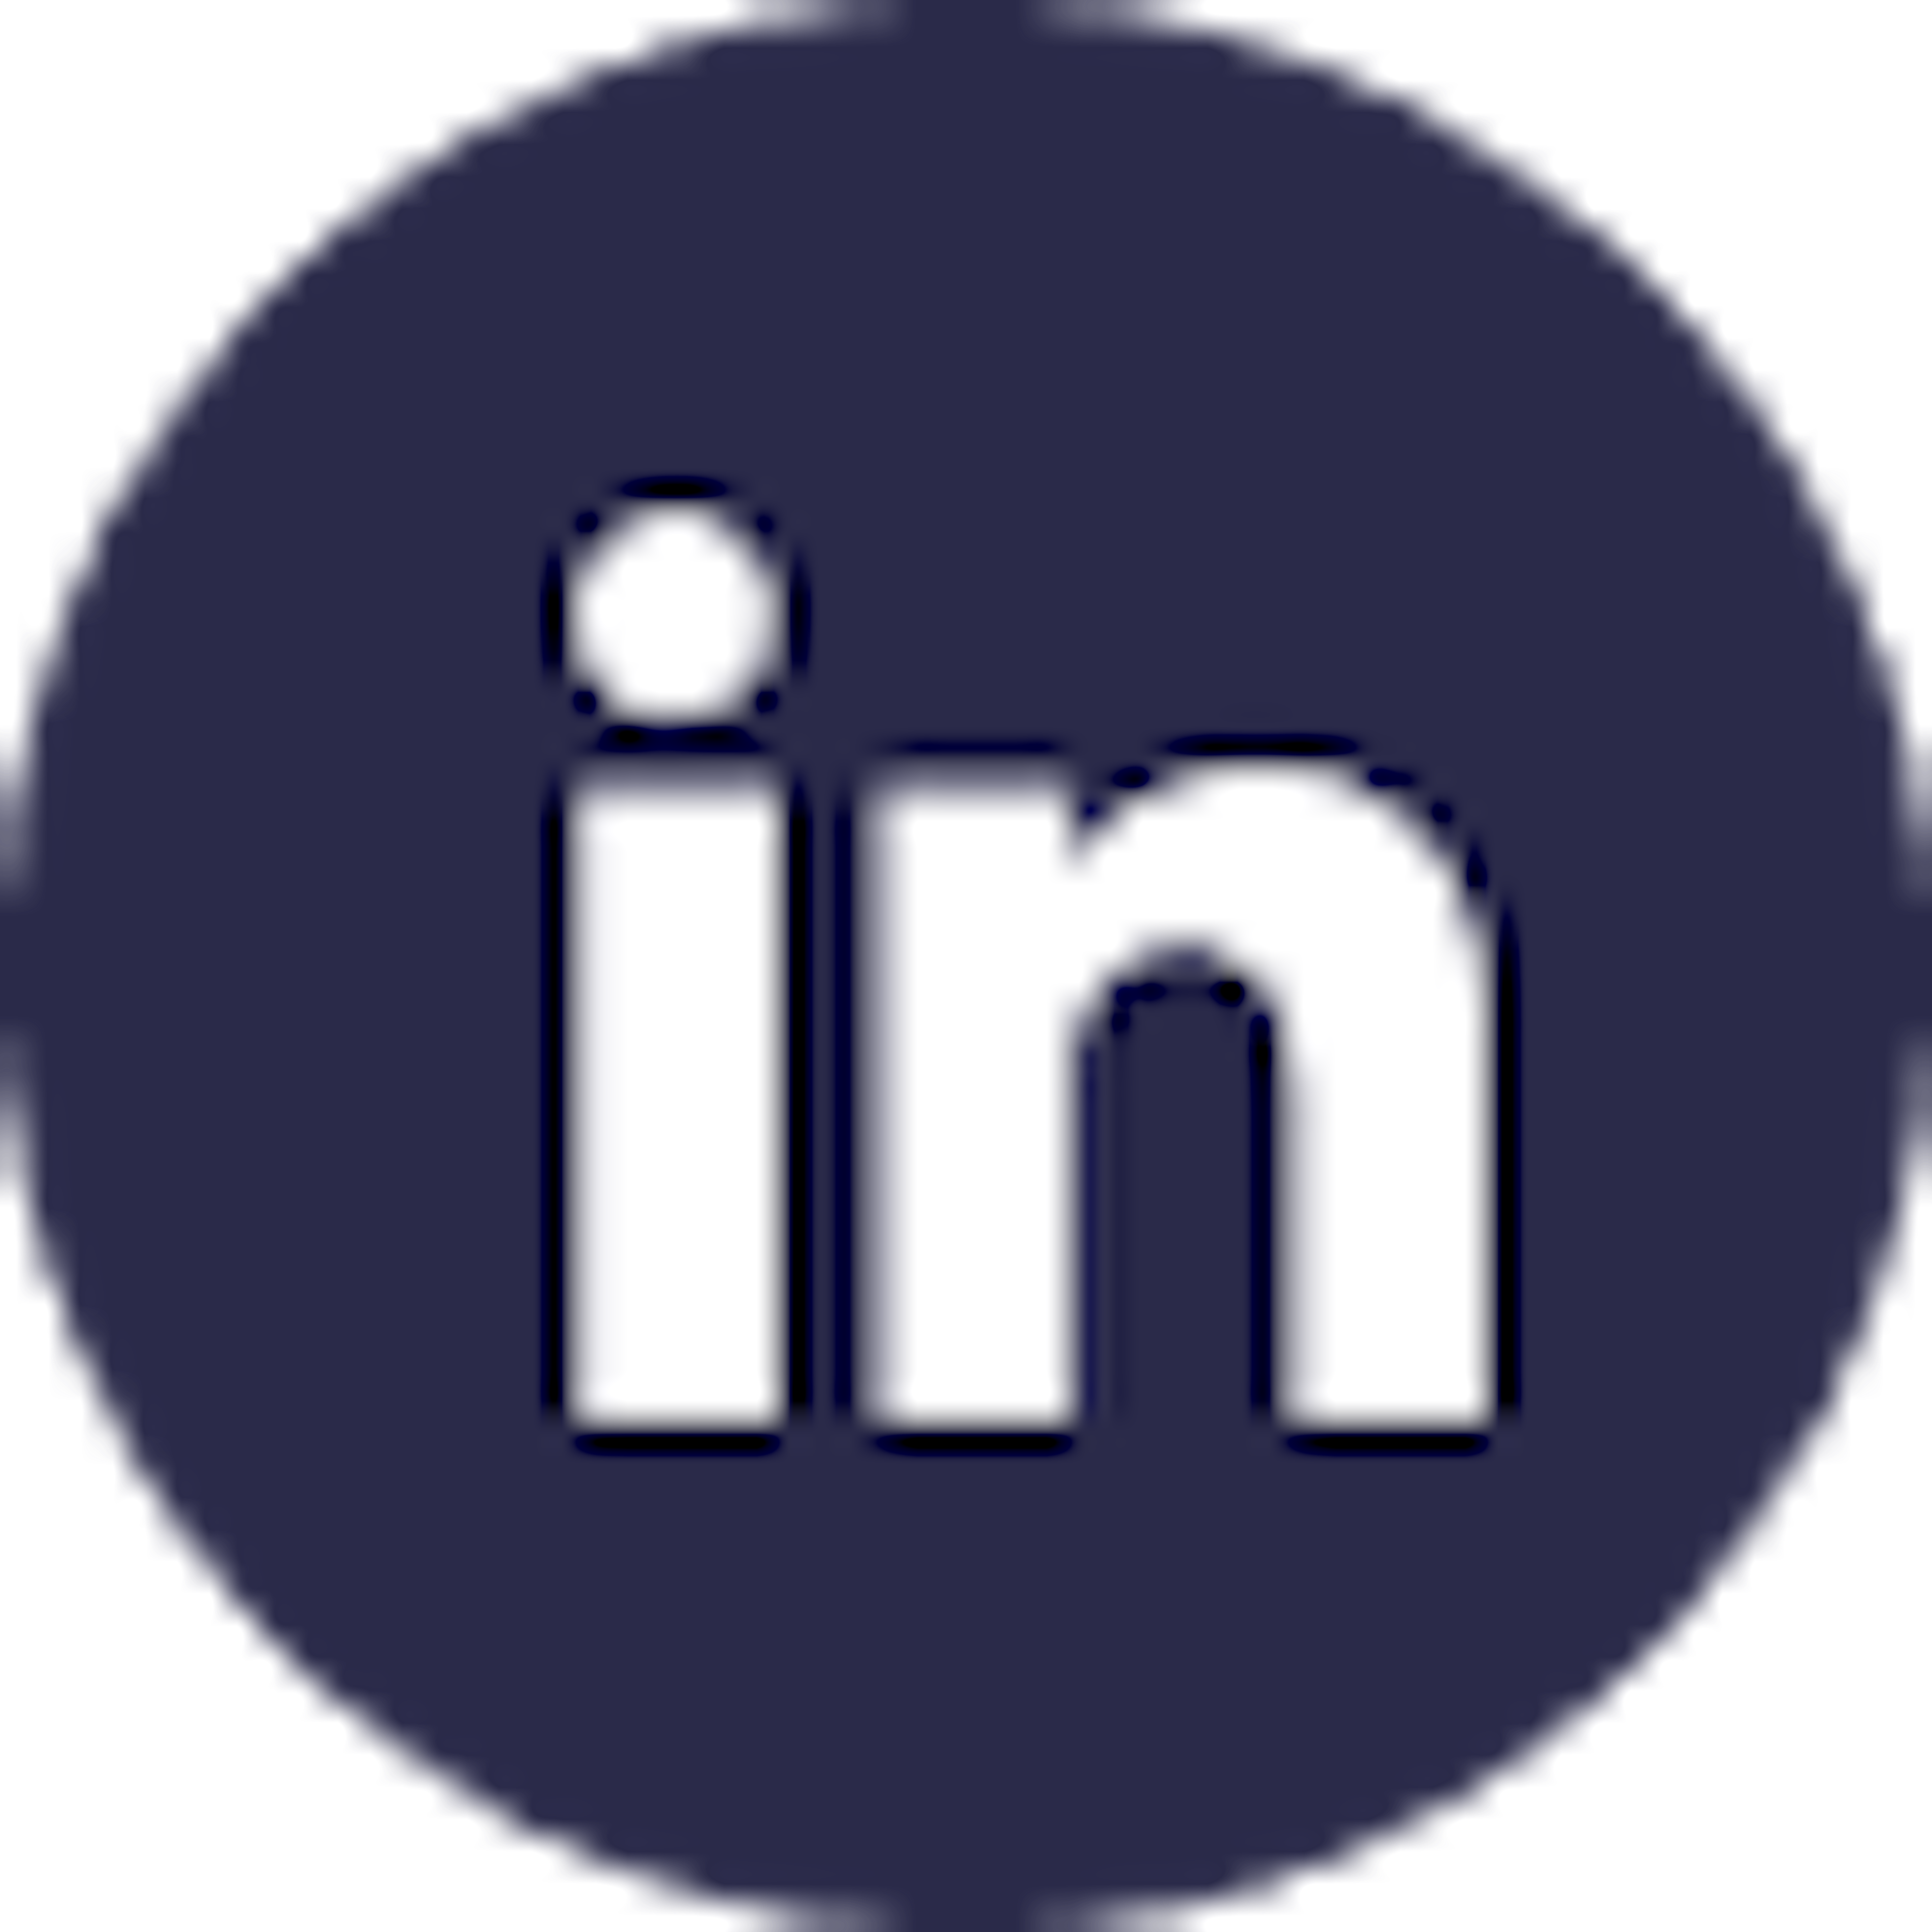 LinkedIn’s logo.